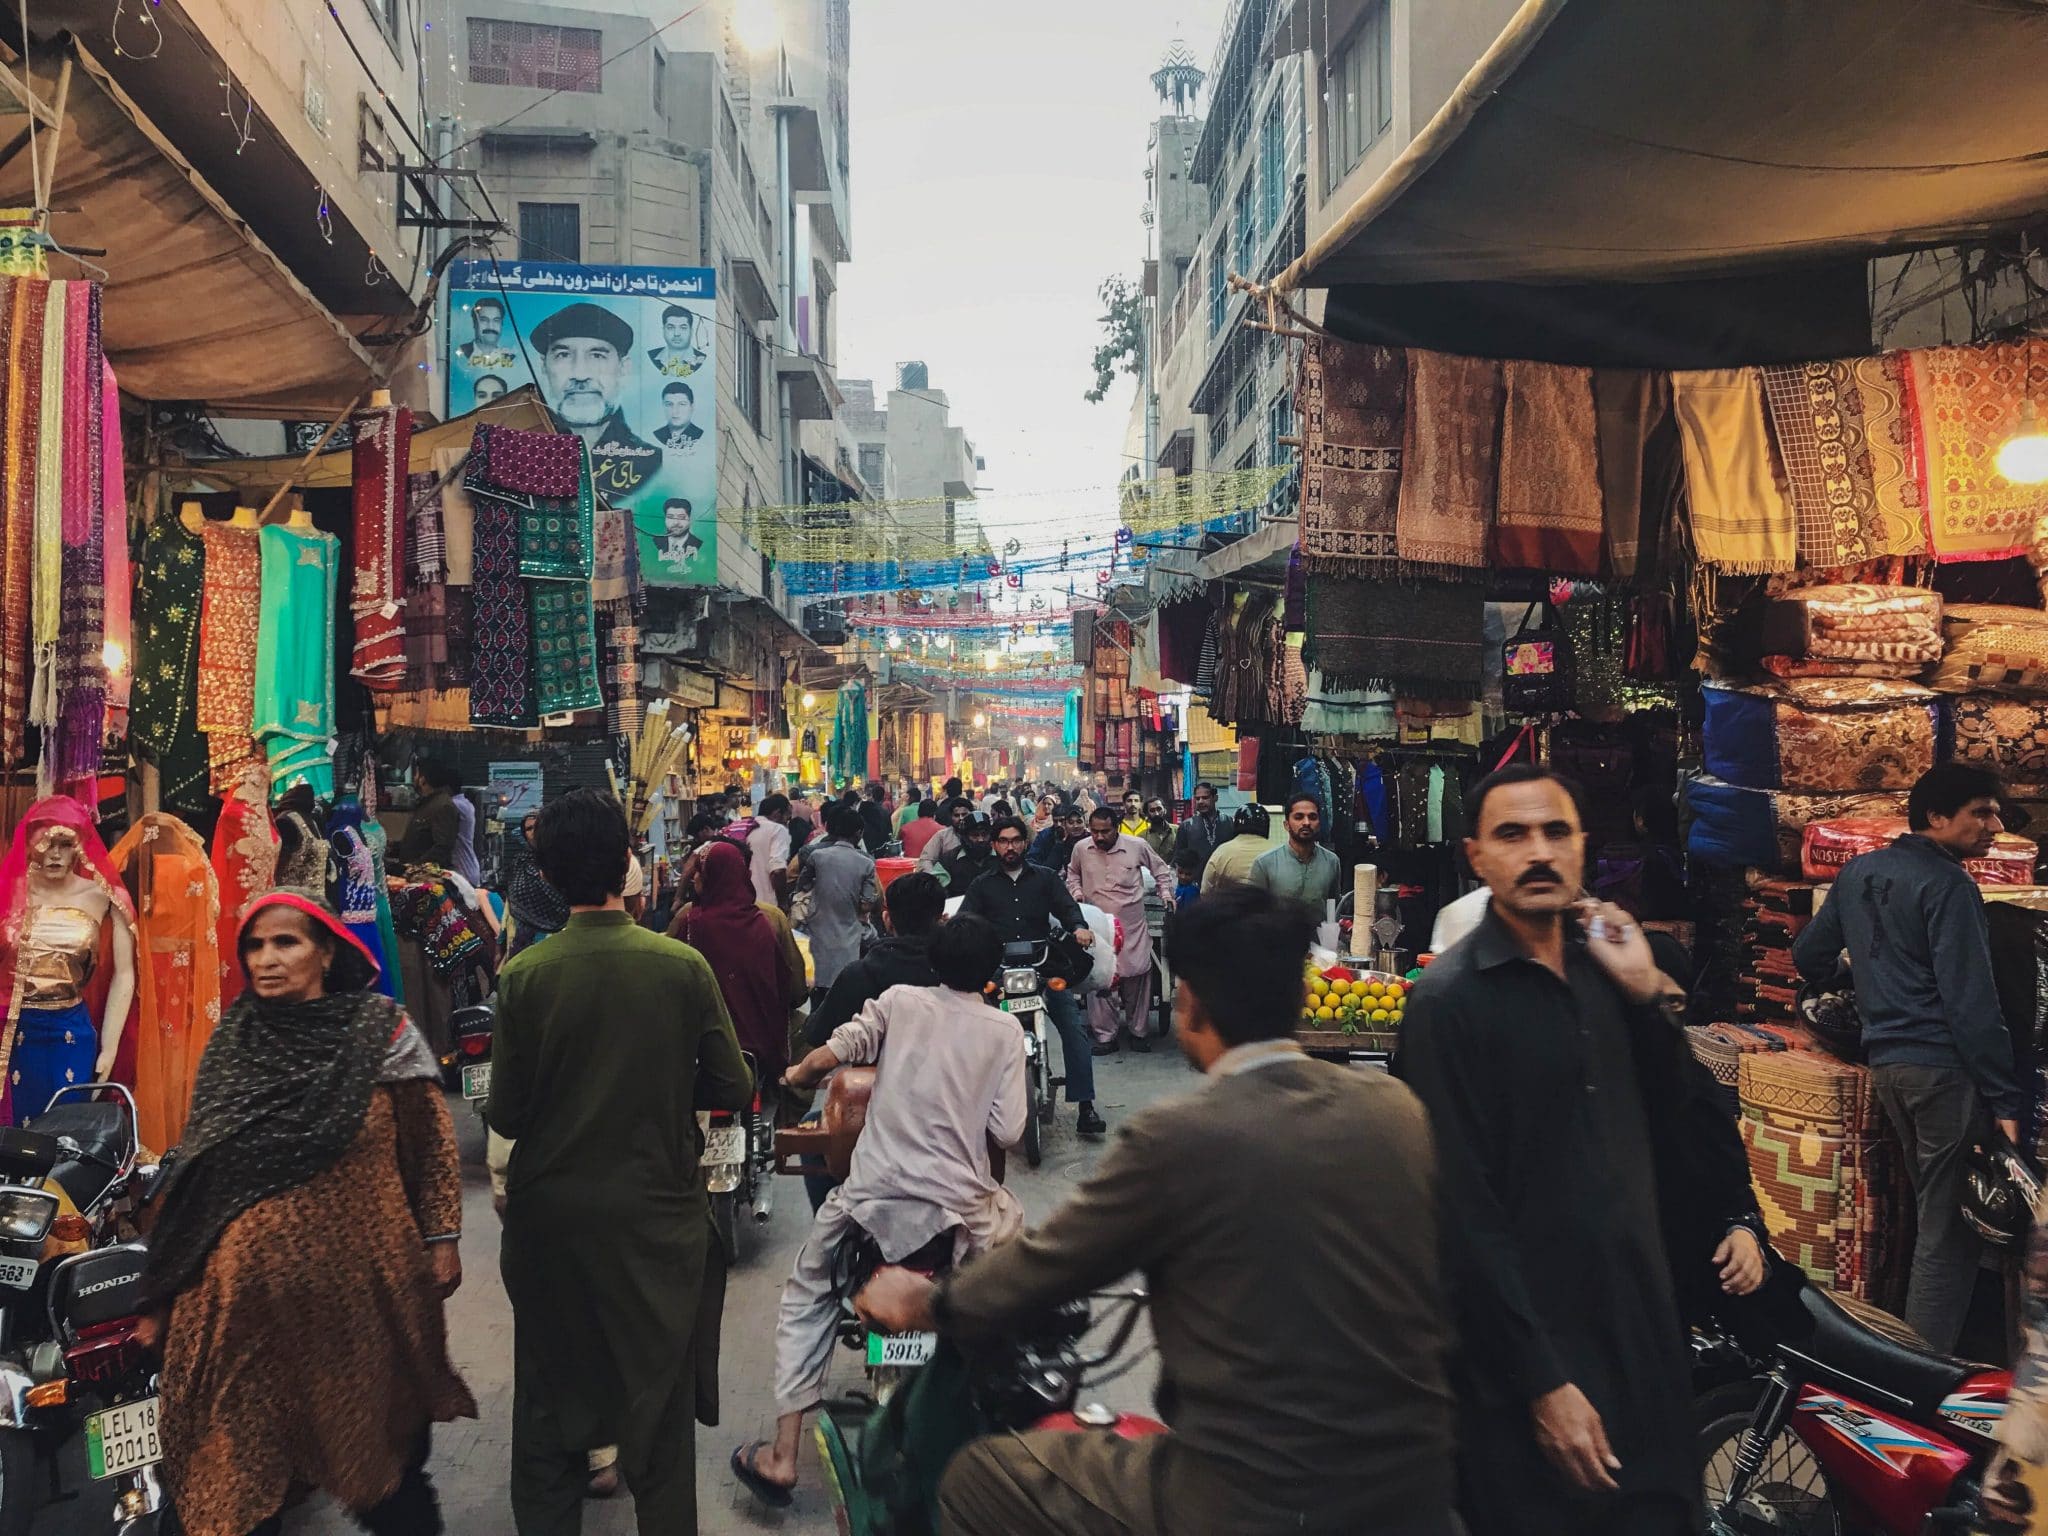 Buchvorstellung und Interview: Backpacking in Pakistan von Clemens Sehi und Anne Steinbach